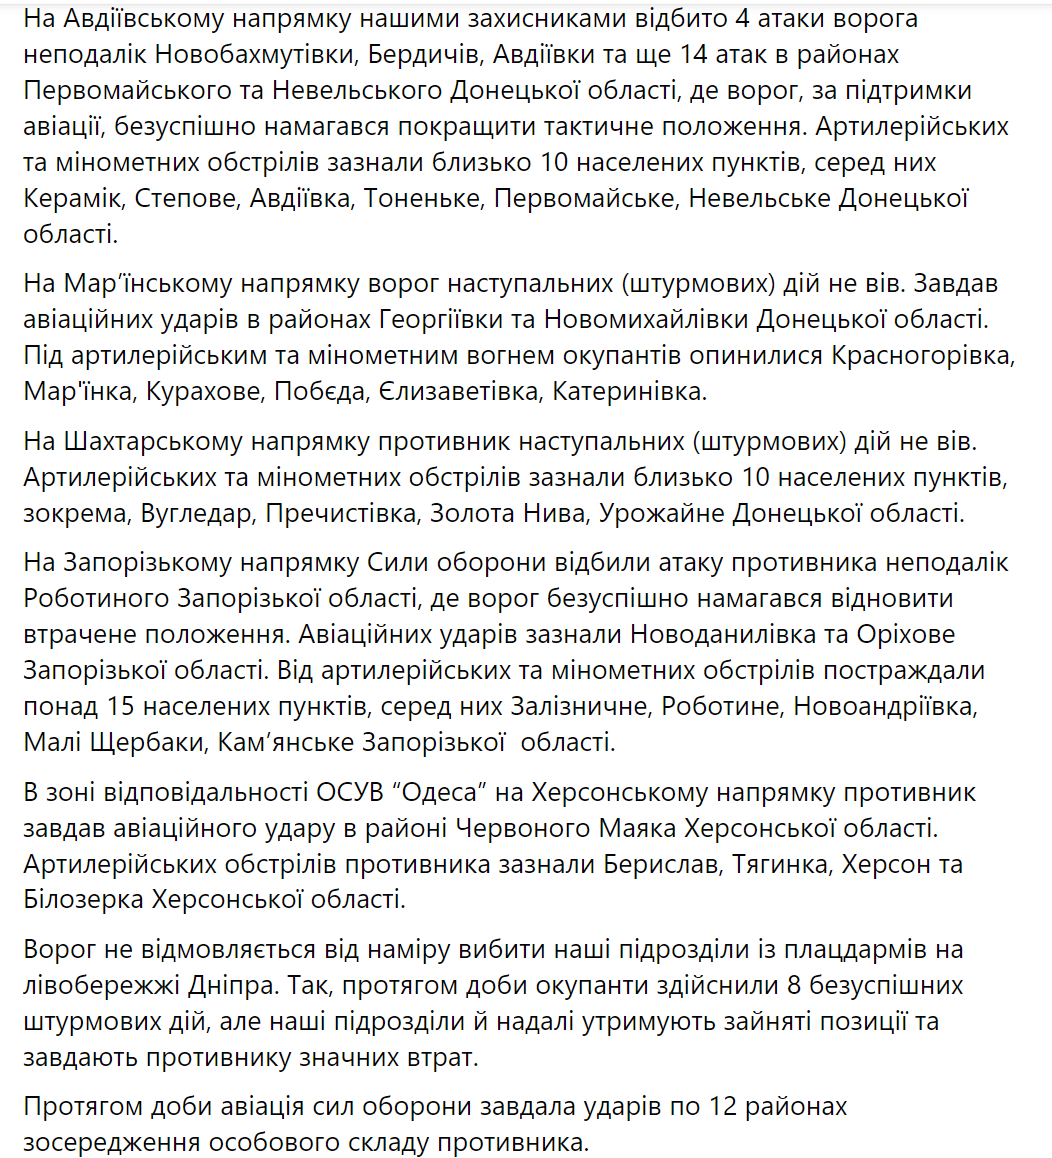 Українська авіація завдала ударів по 12 районах зосередження особового складу армії РФ – Генштаб